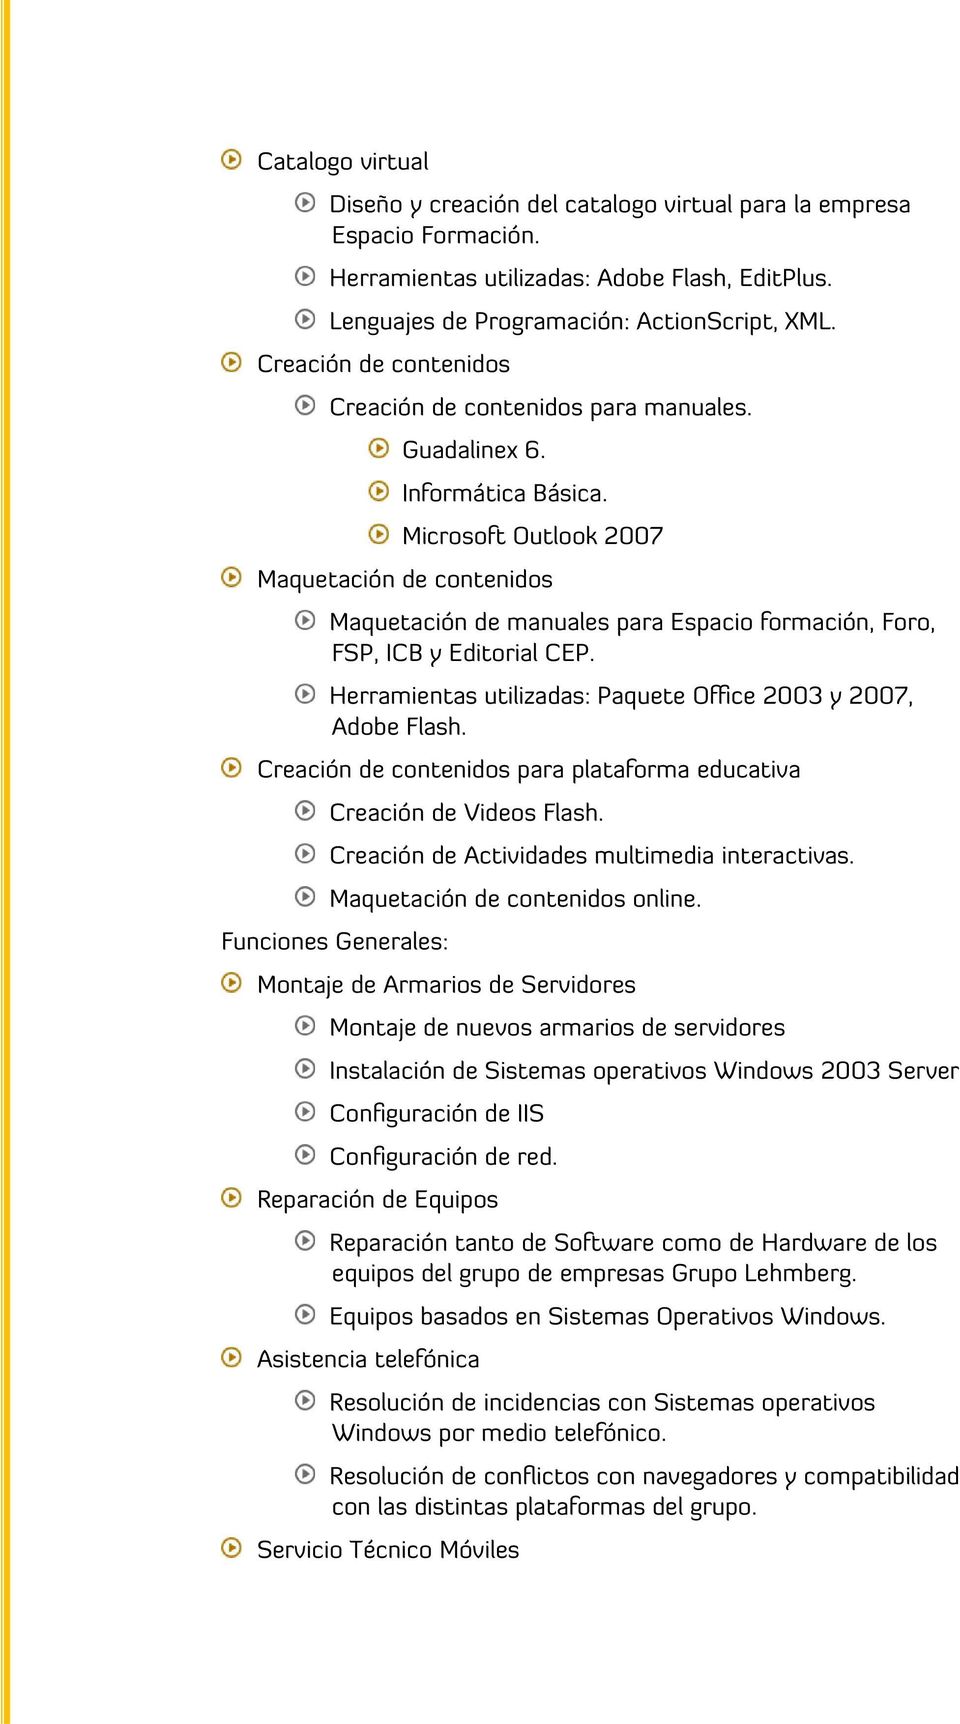 Microsoft Outlook 2007 Maquetación de contenidos Maquetación de manuales para Espacio formación, Foro, FSP, ICB y Editorial CEP. Herramientas utilizadas: Paquete Office 2003 y 2007, Adobe Flash.